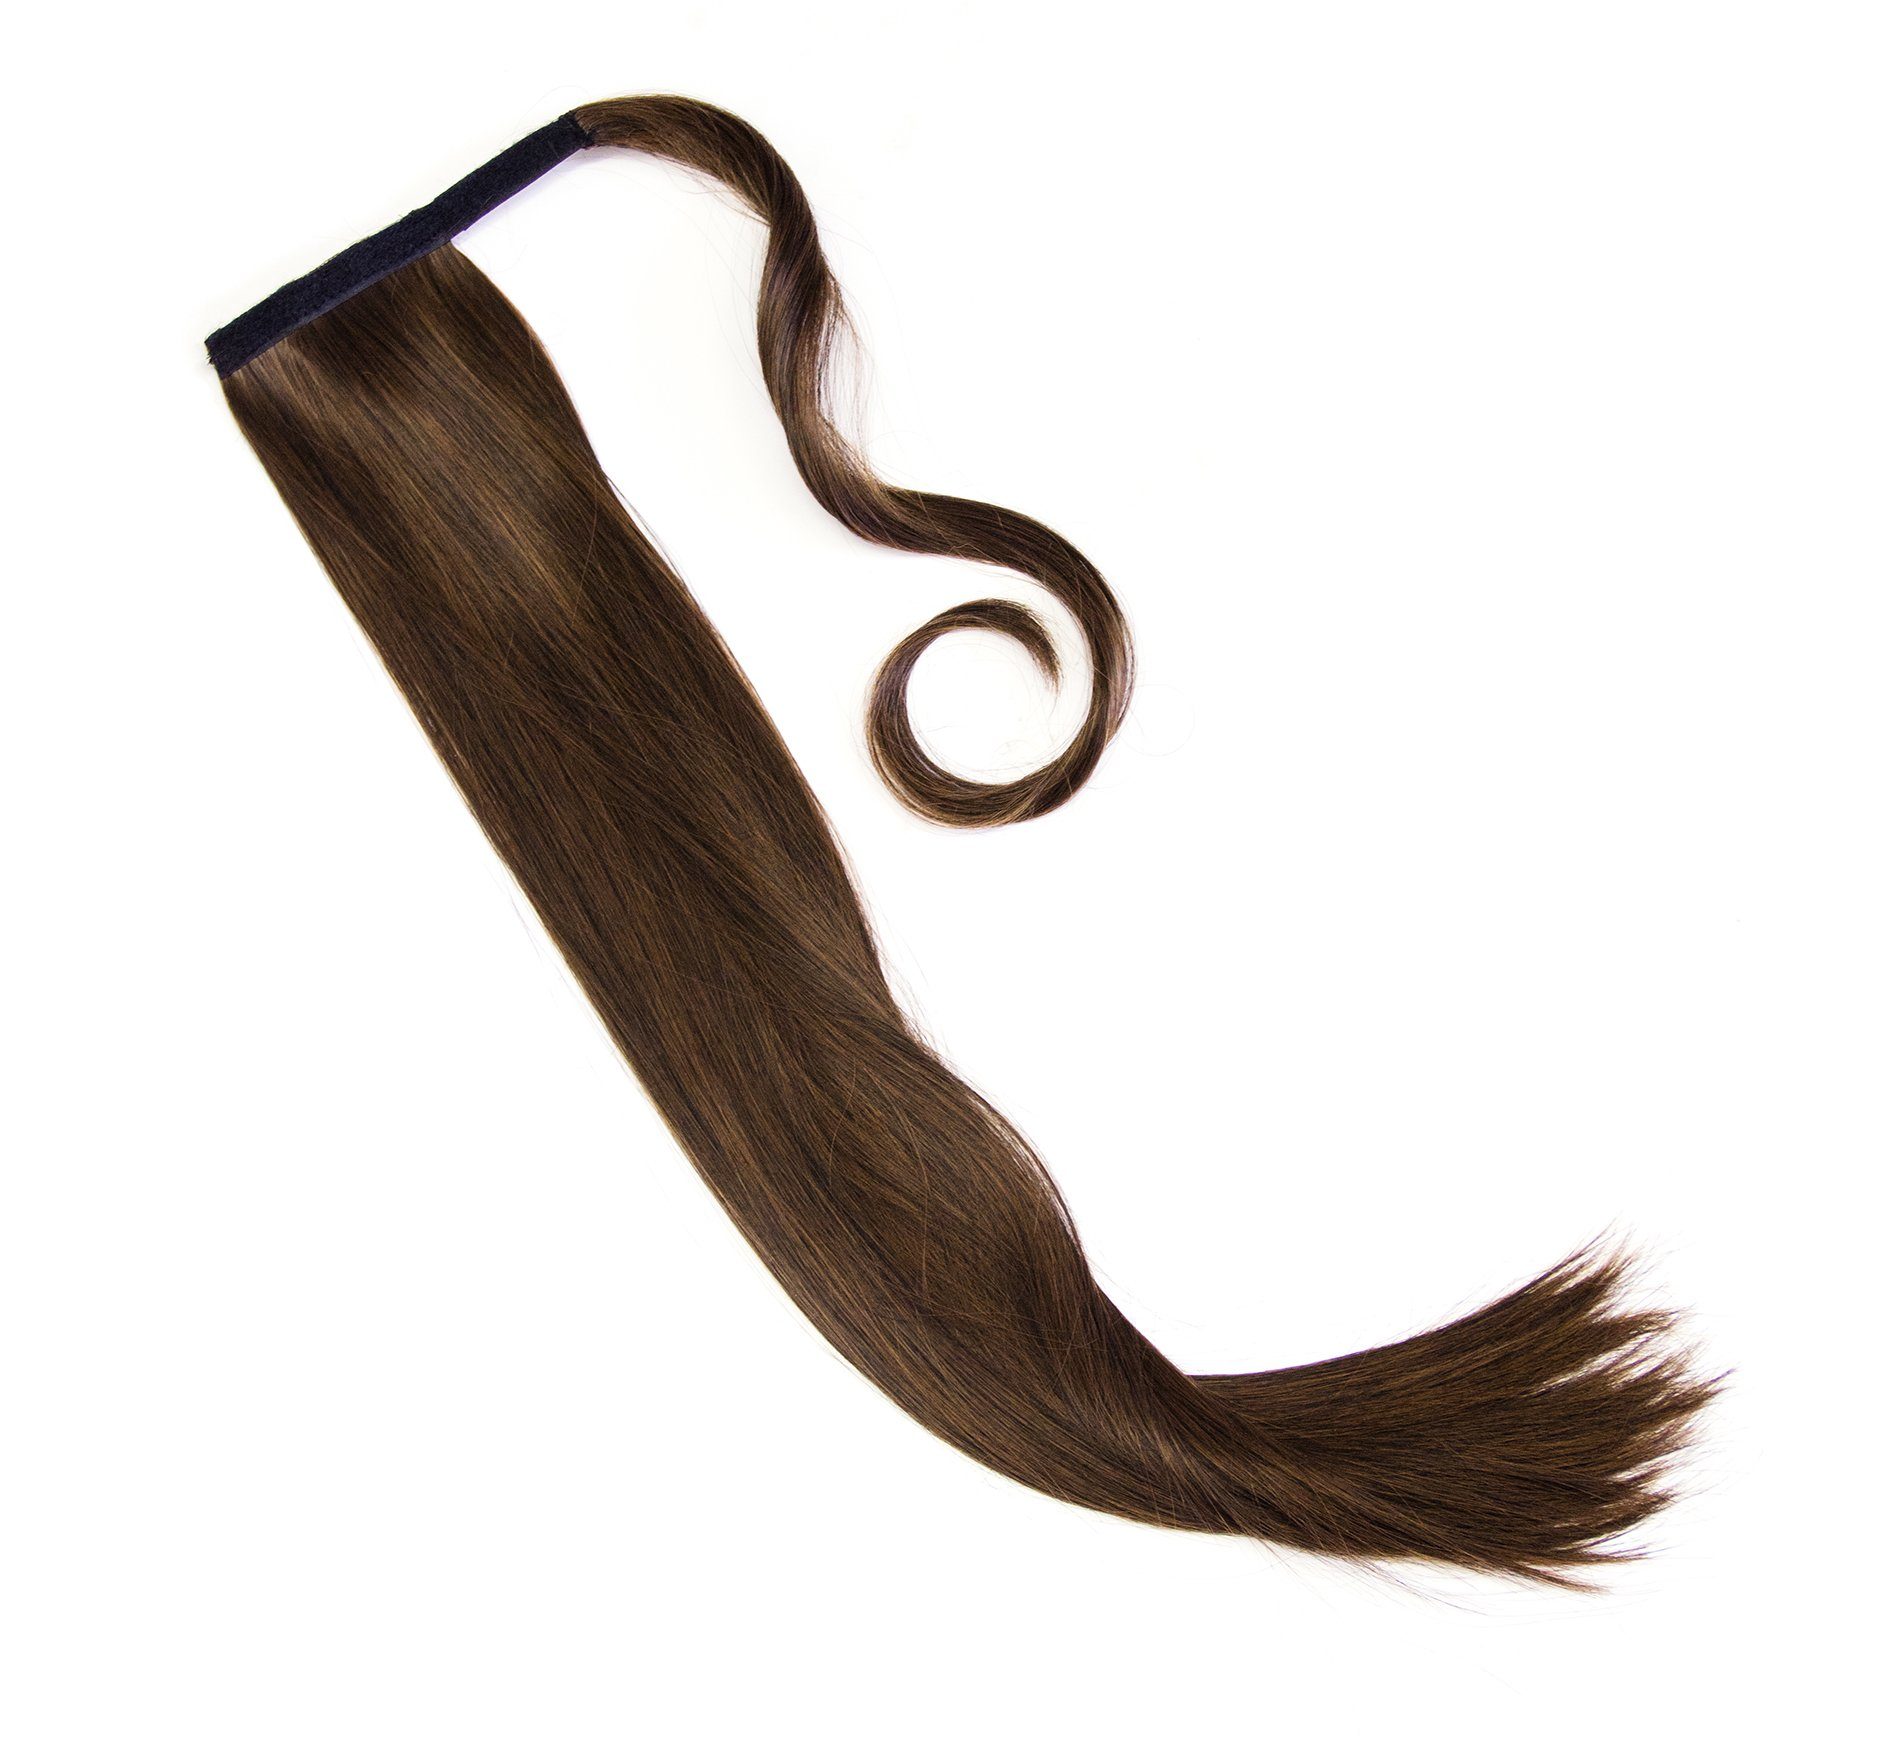 MyBeautyworld24 Haarclip Haarteil Haarverlängerung lange Haare Zopf Pferdeschwanz glatt 60 cm schwarz-braun | Haarspangen